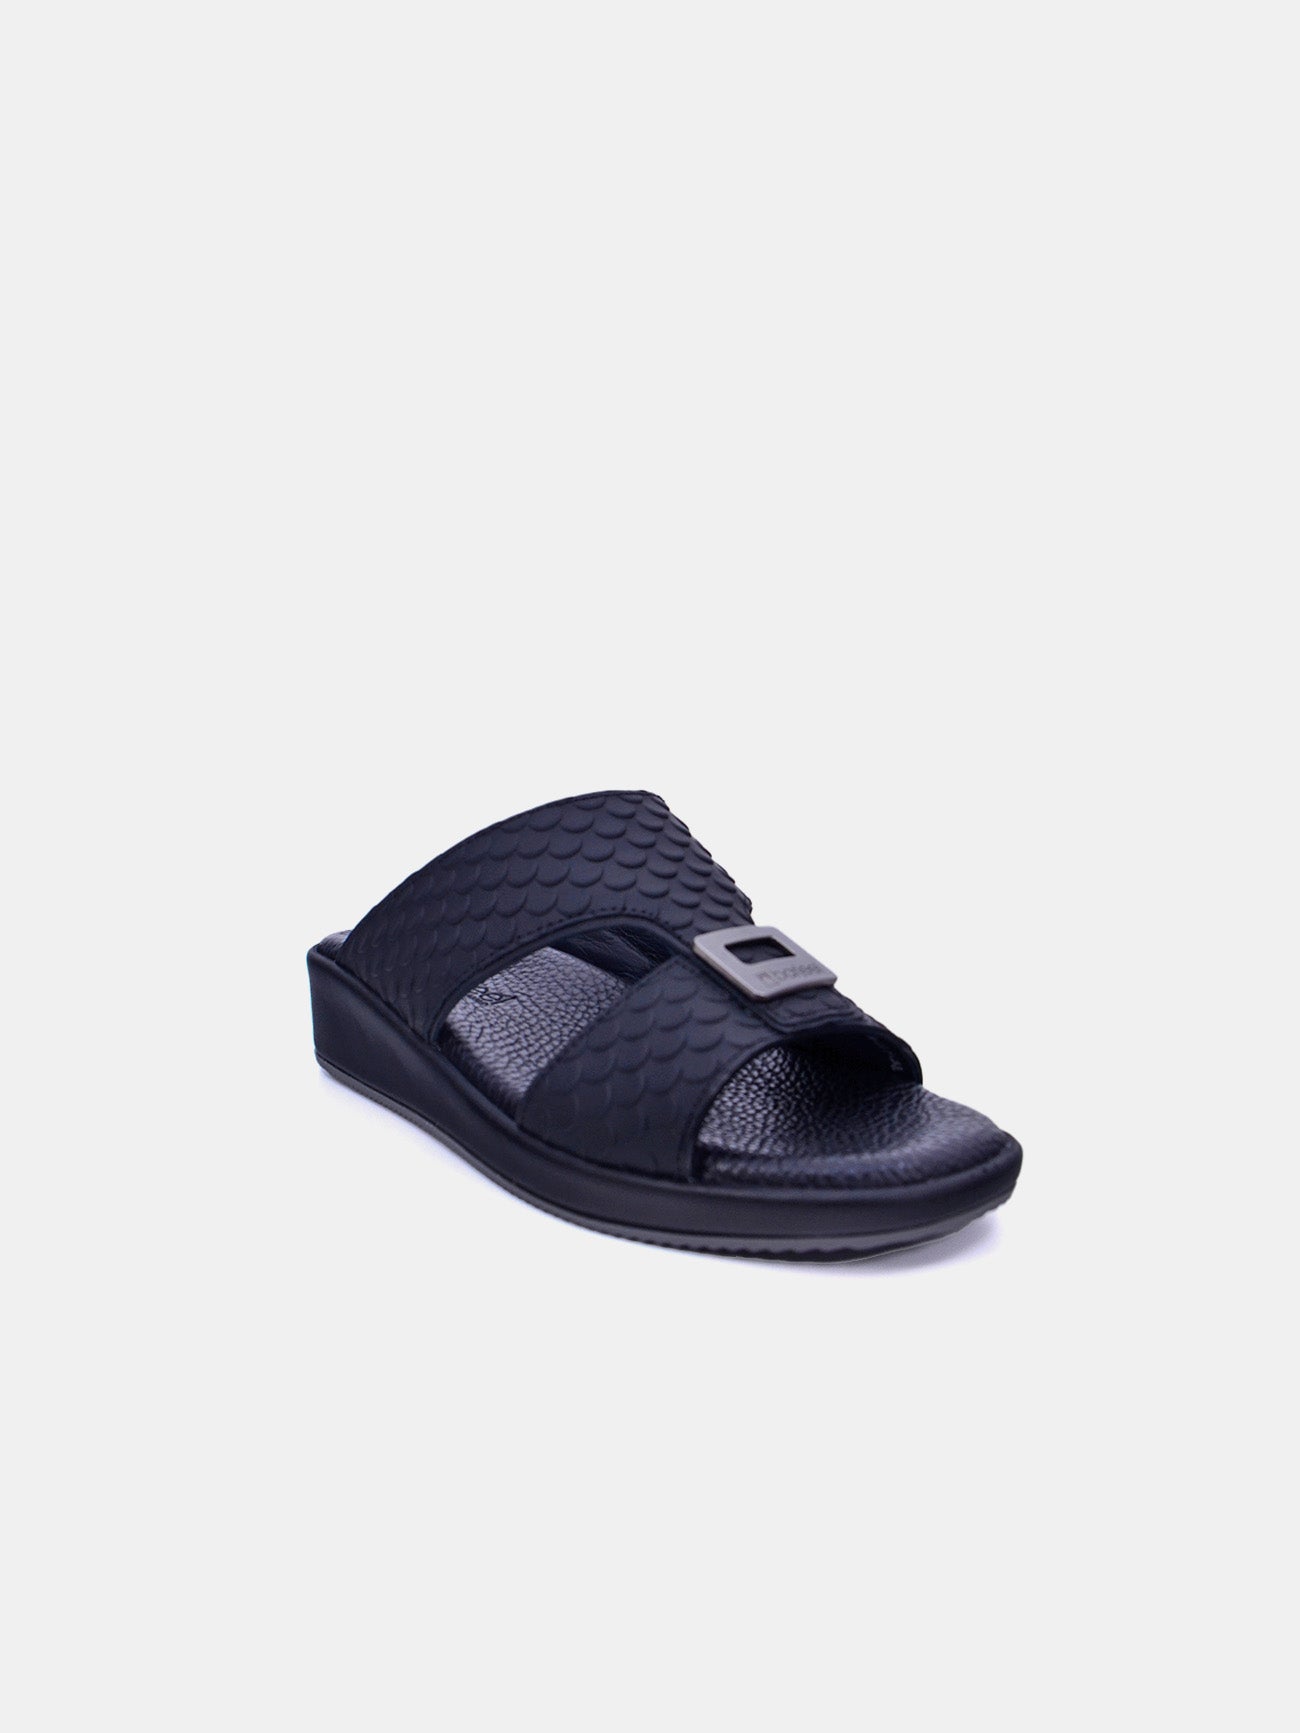 Barjeel Uno VTS 19 Boys Sandals #color_Black